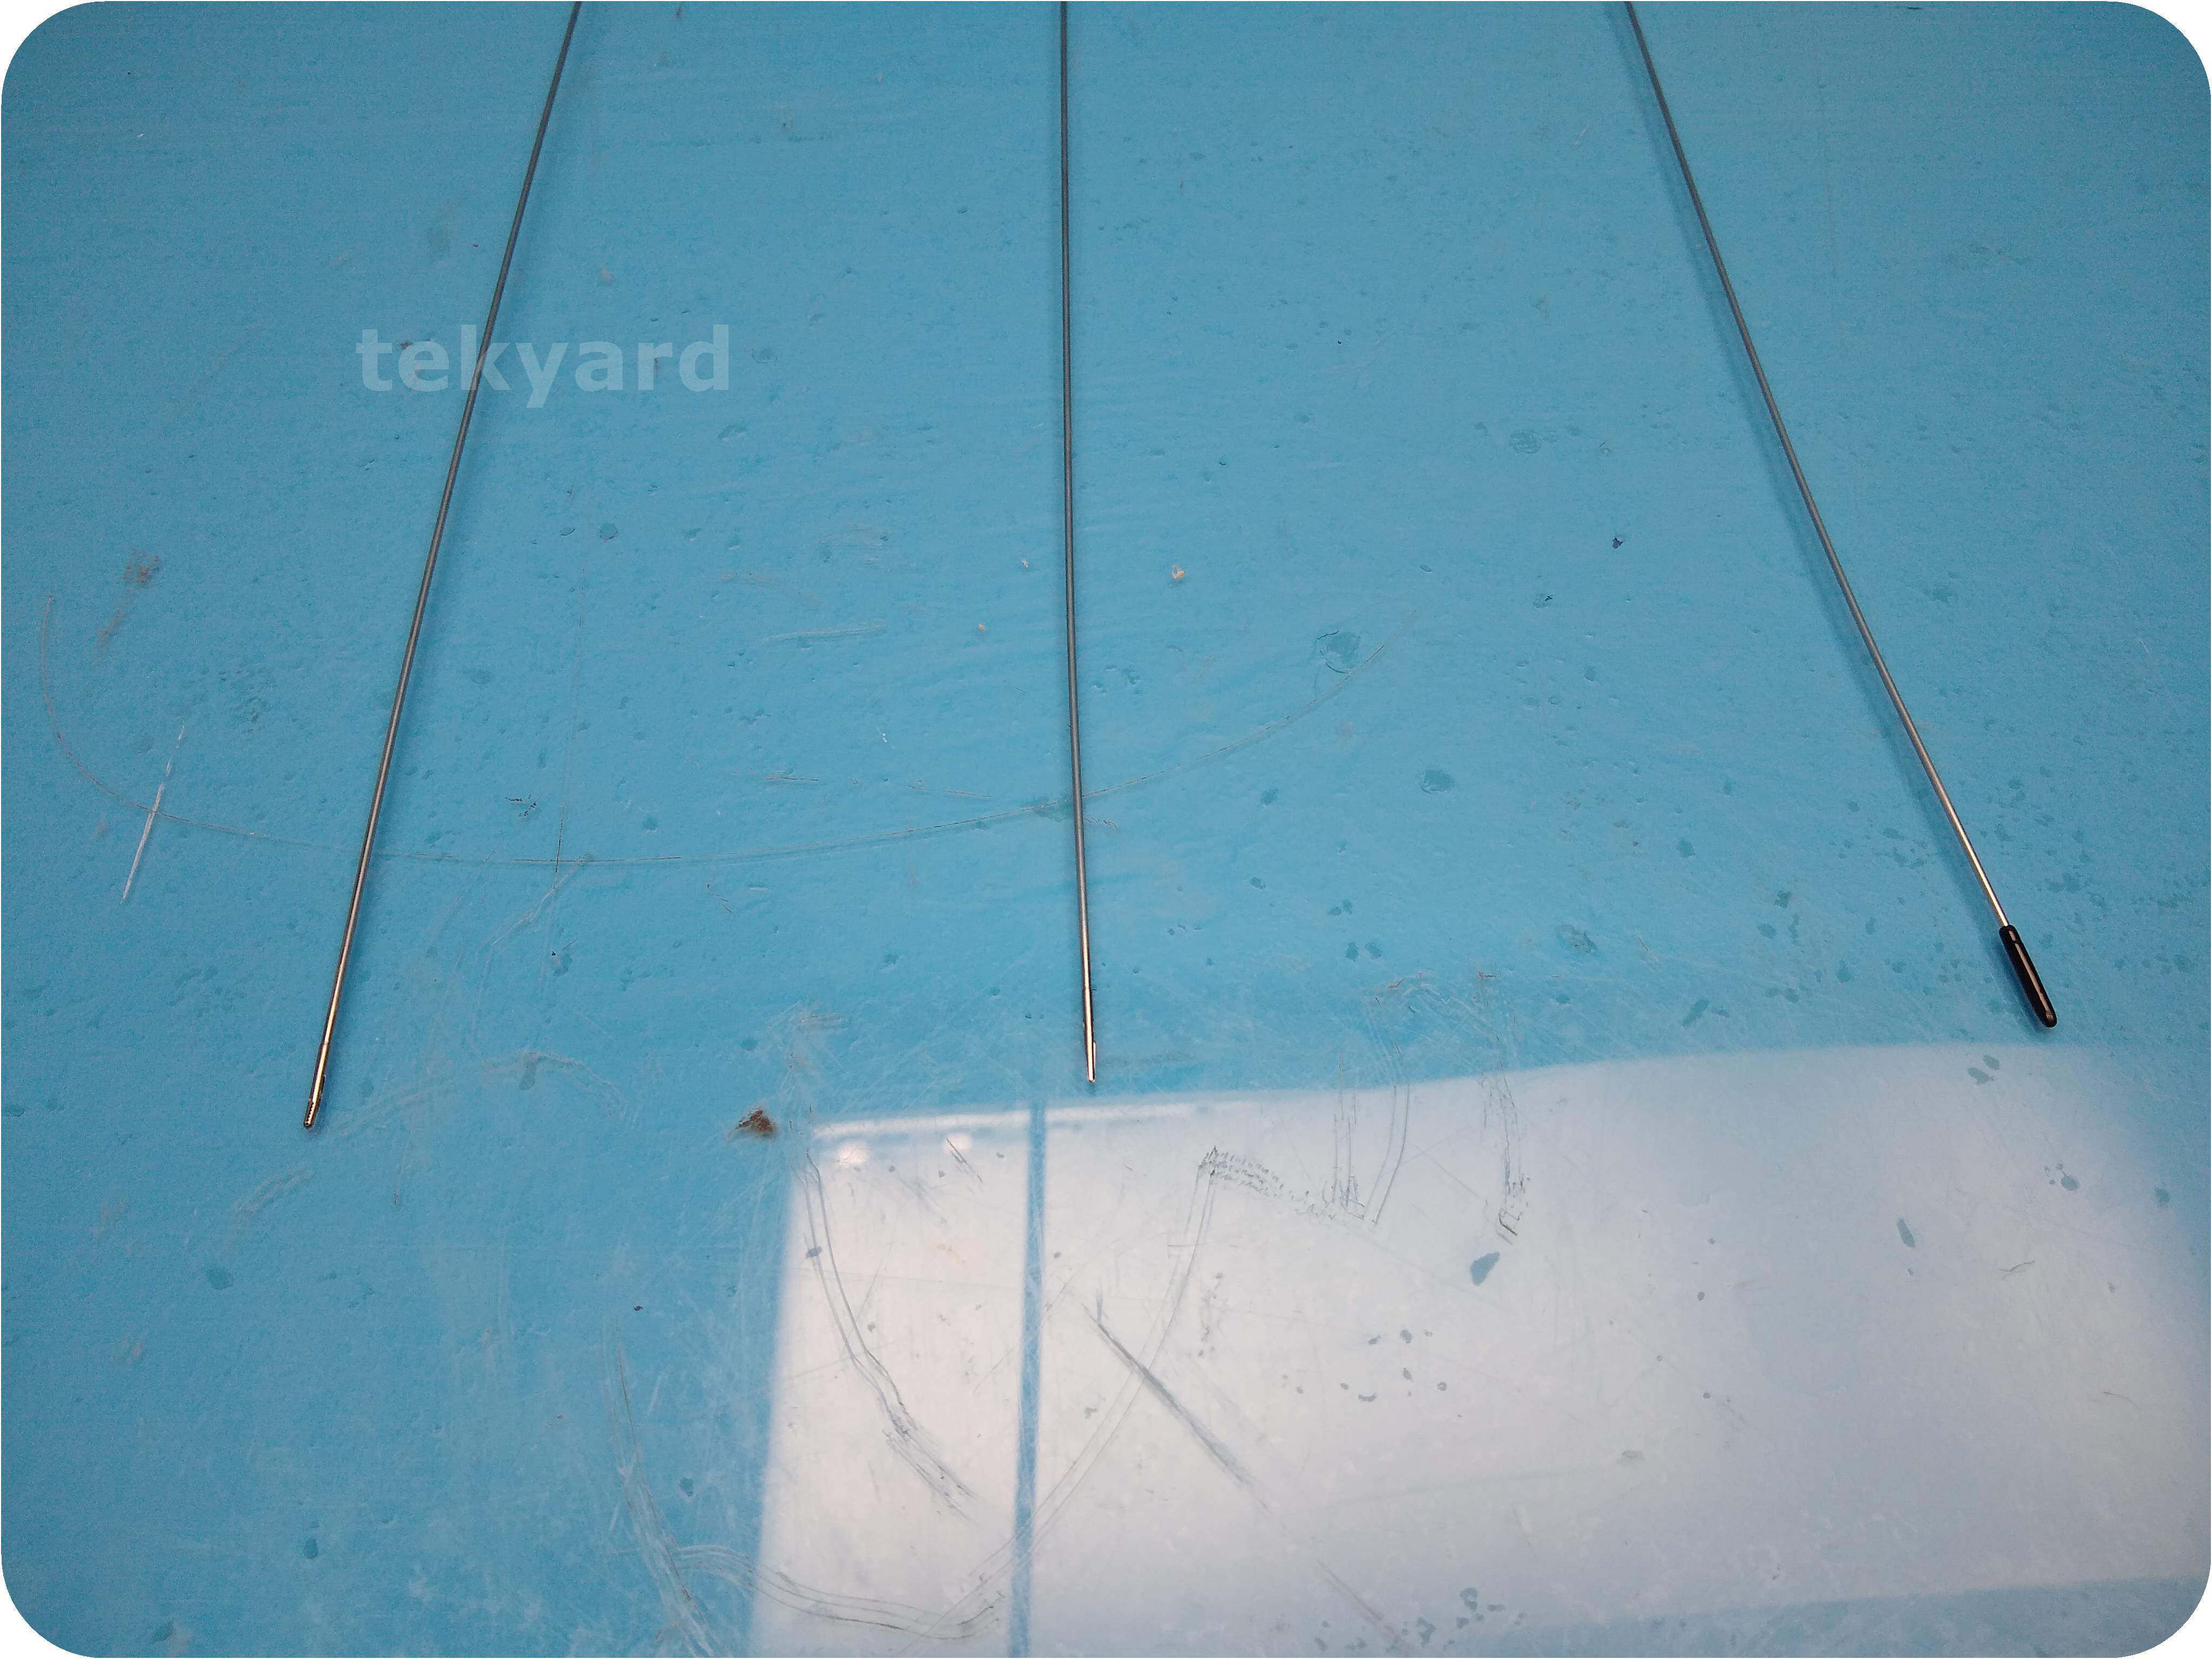 tekyard, LLC. - 250554-Gyrus ACMI GYS-5, GYB-5, GYA-5 Semi Rigid